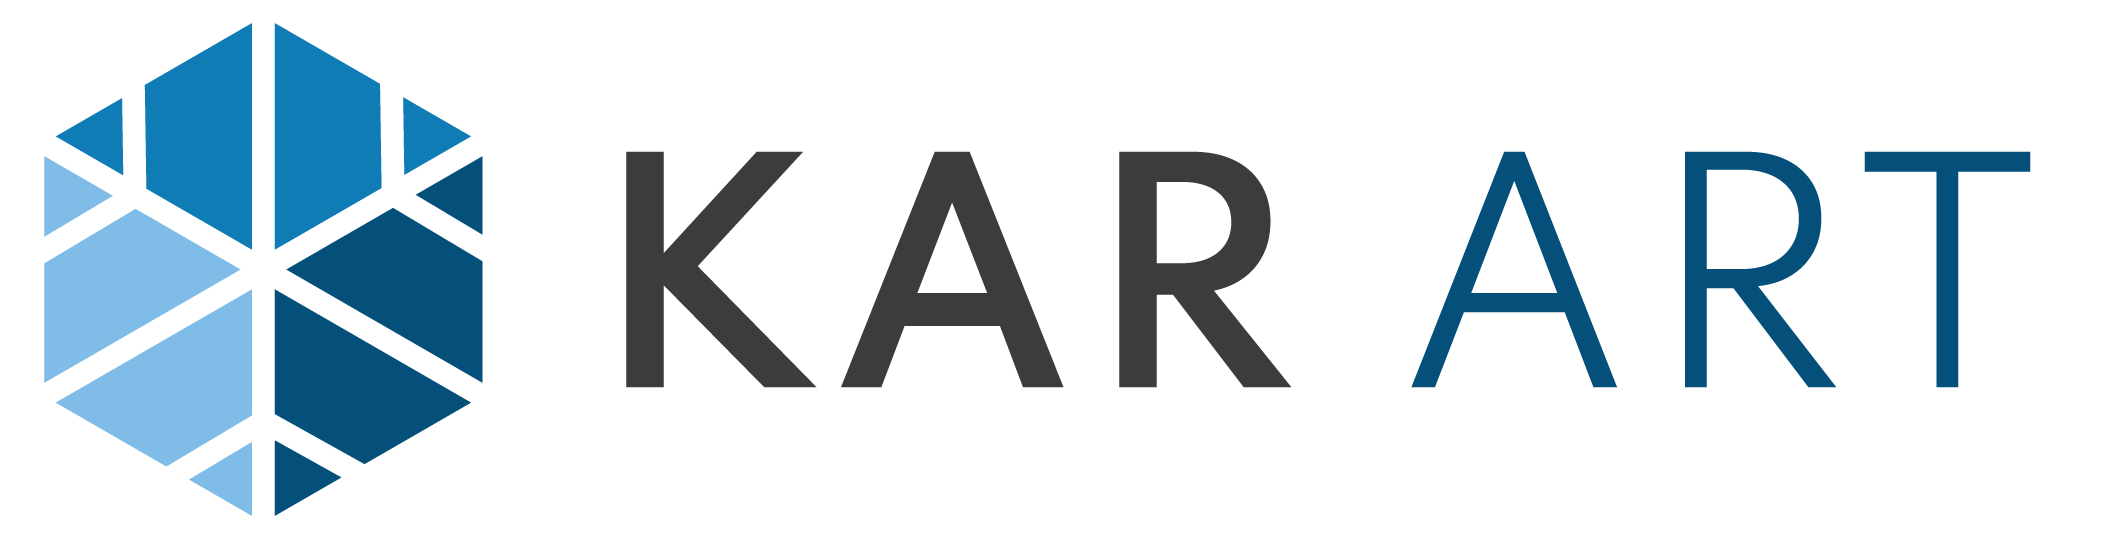 Kar Art Logo horizontal